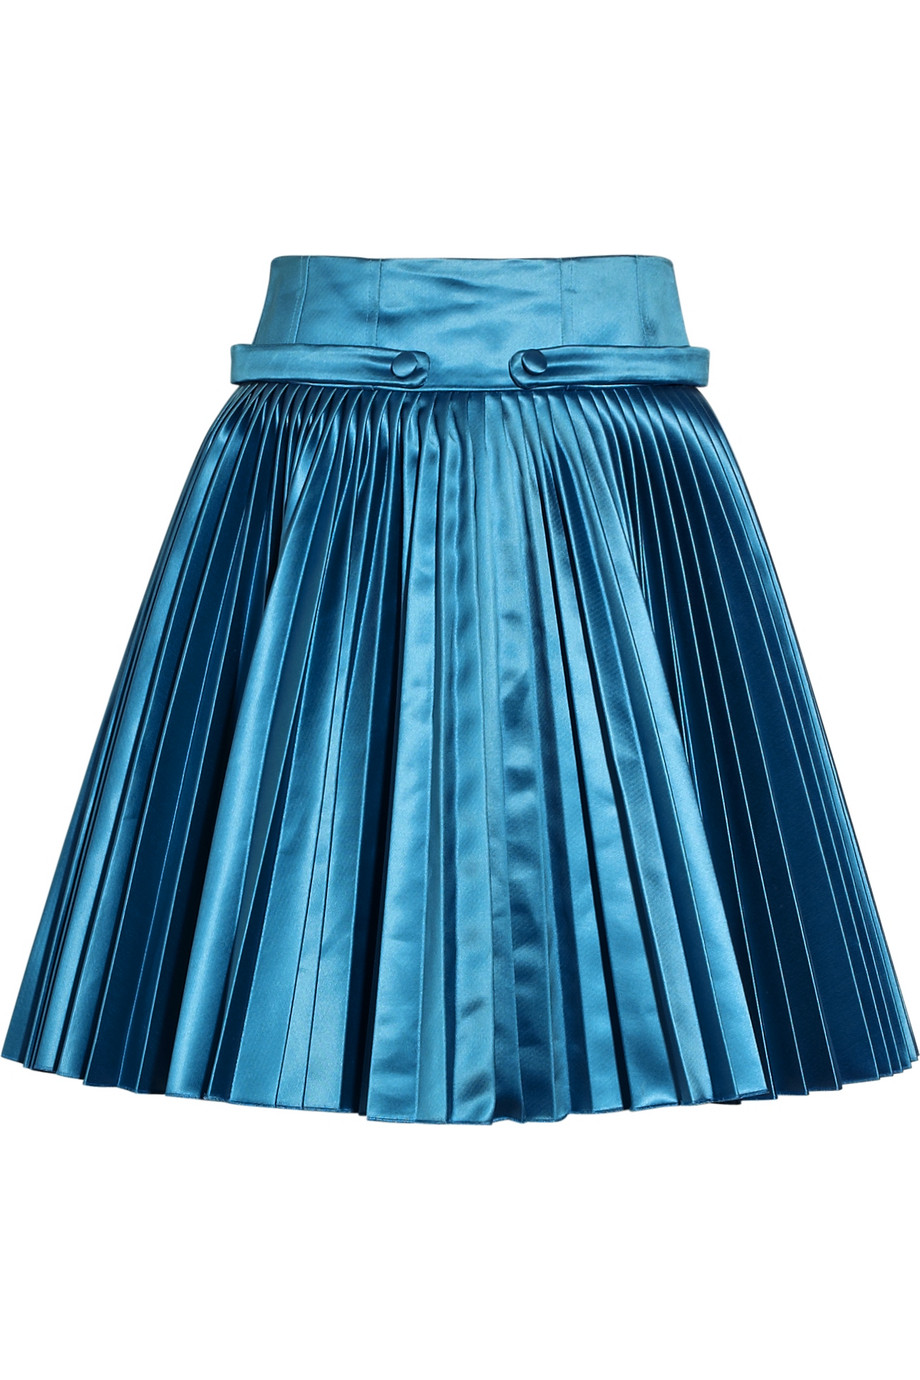 Pleated Blue Skirt 14